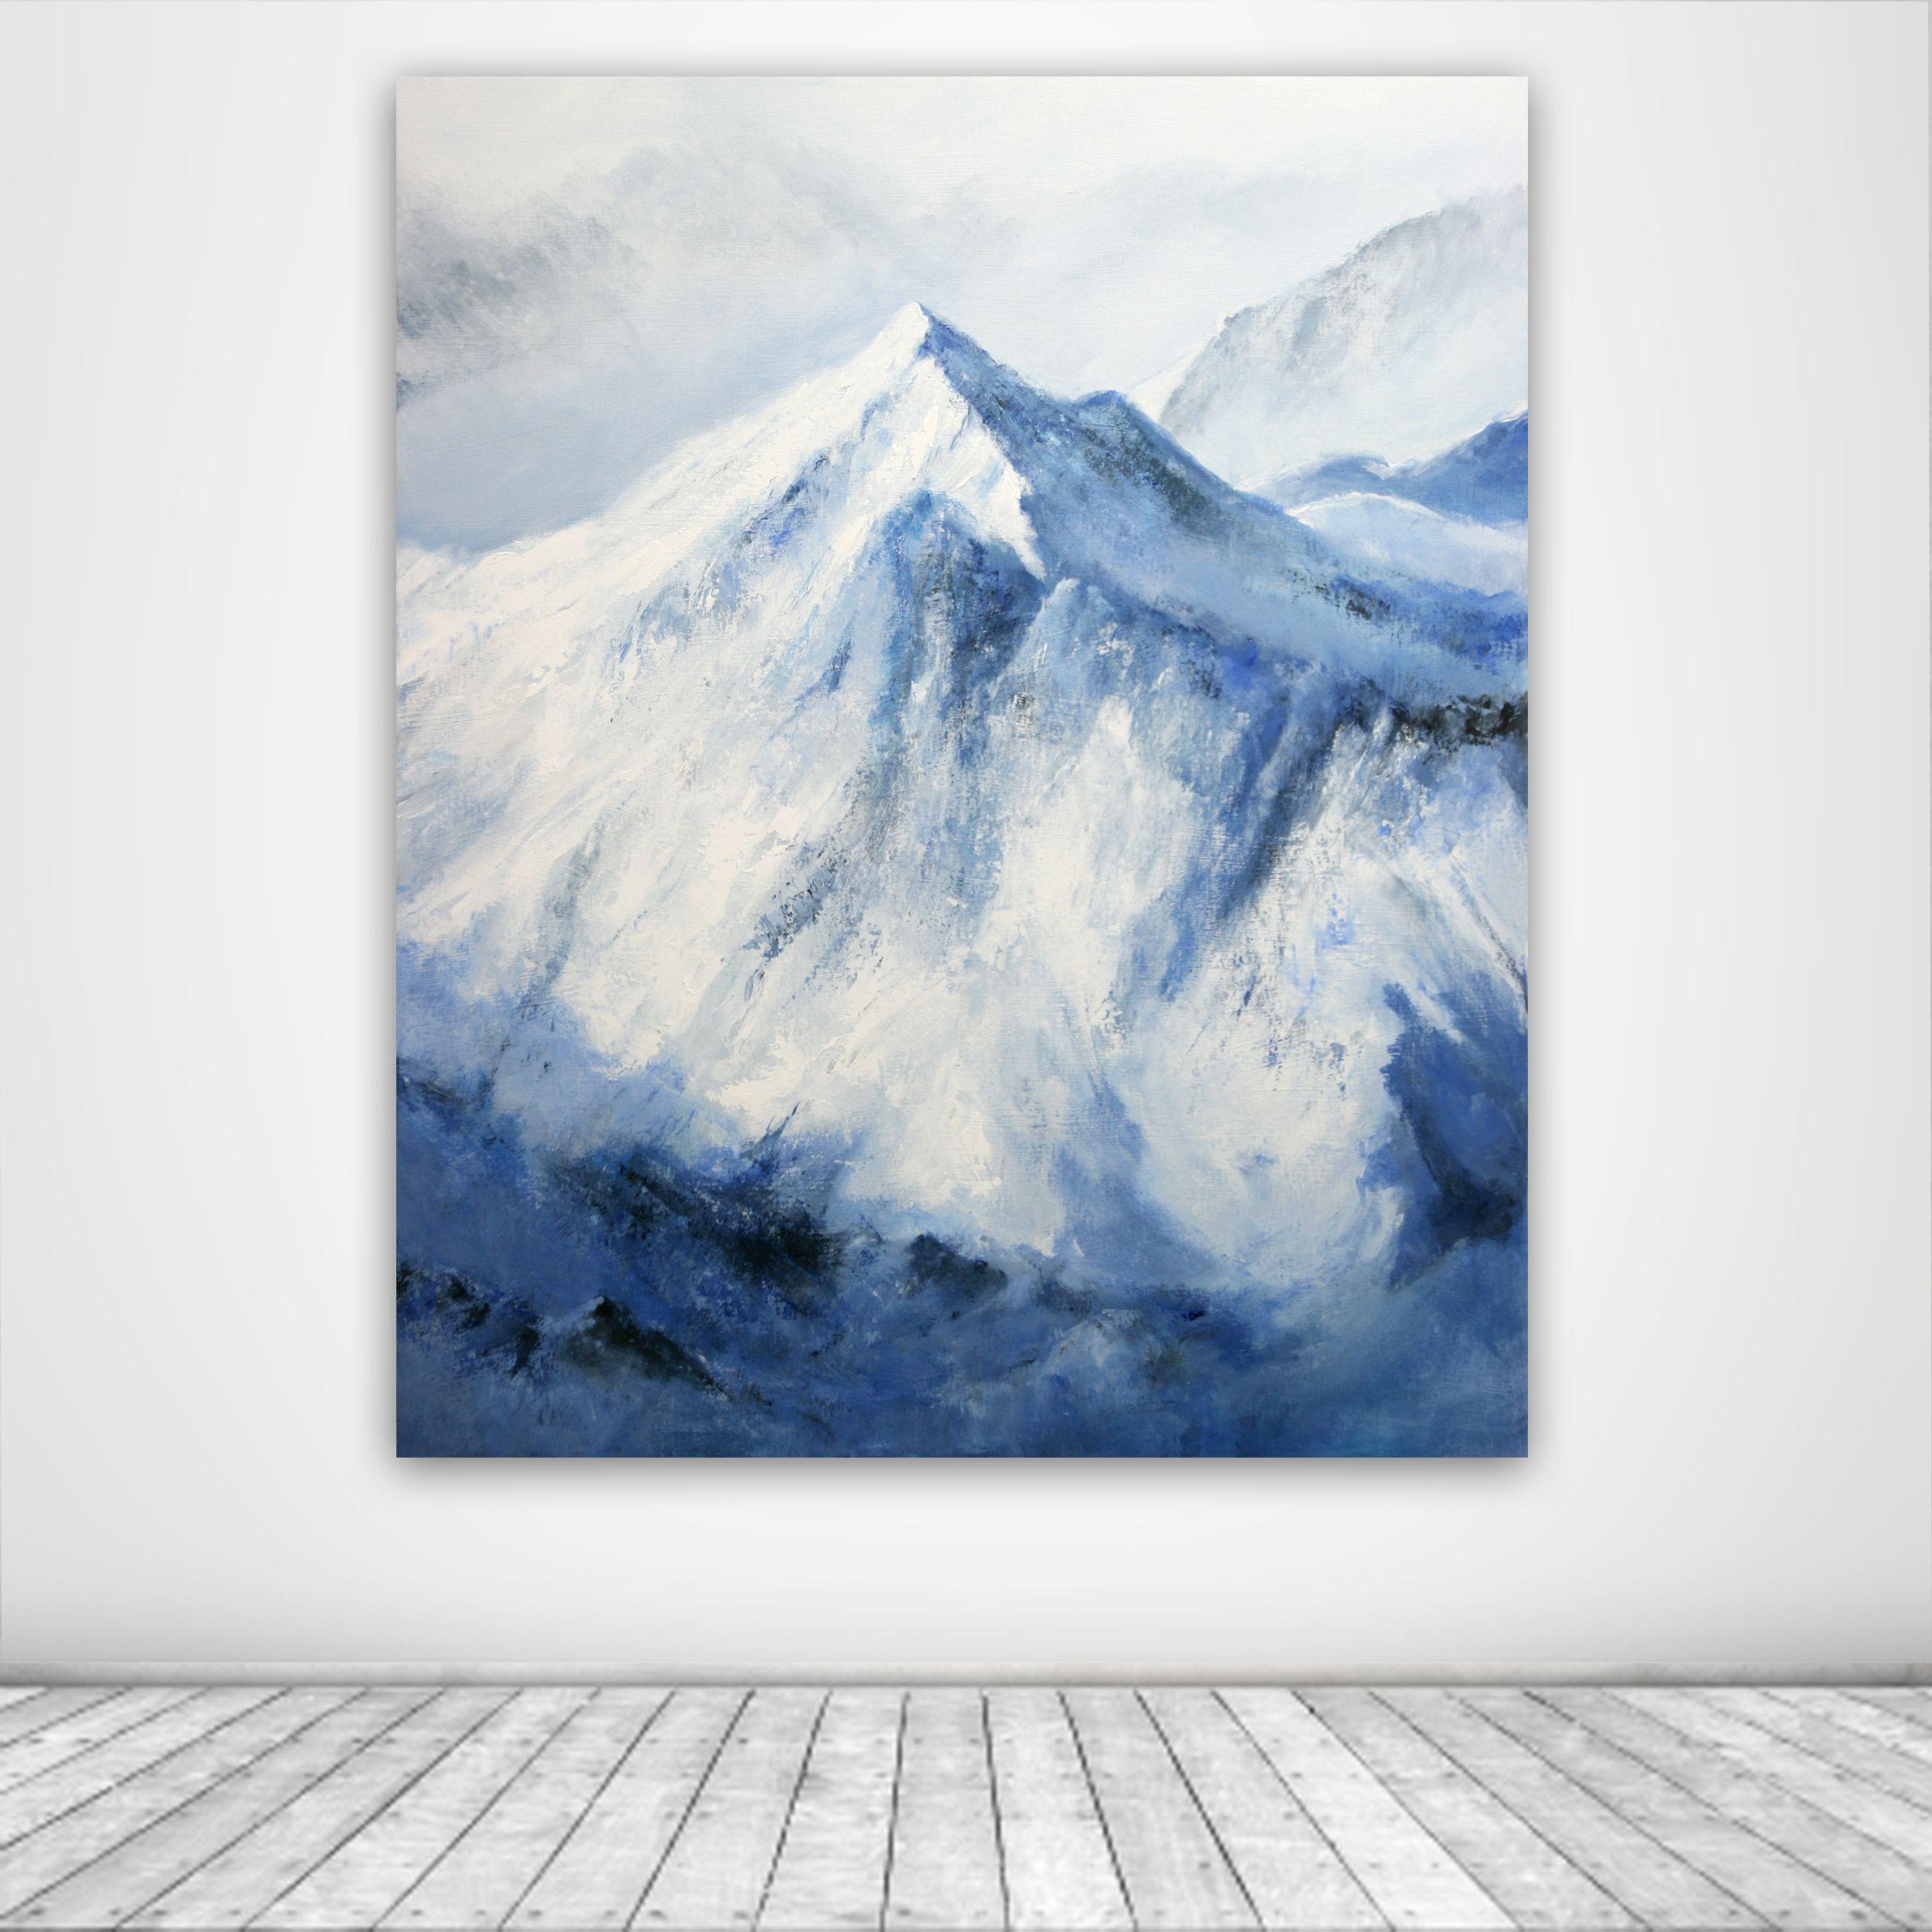 Peinture d'hiver alpine, acrylique sur toile - Réalisme Painting par Behshad Arjomandi